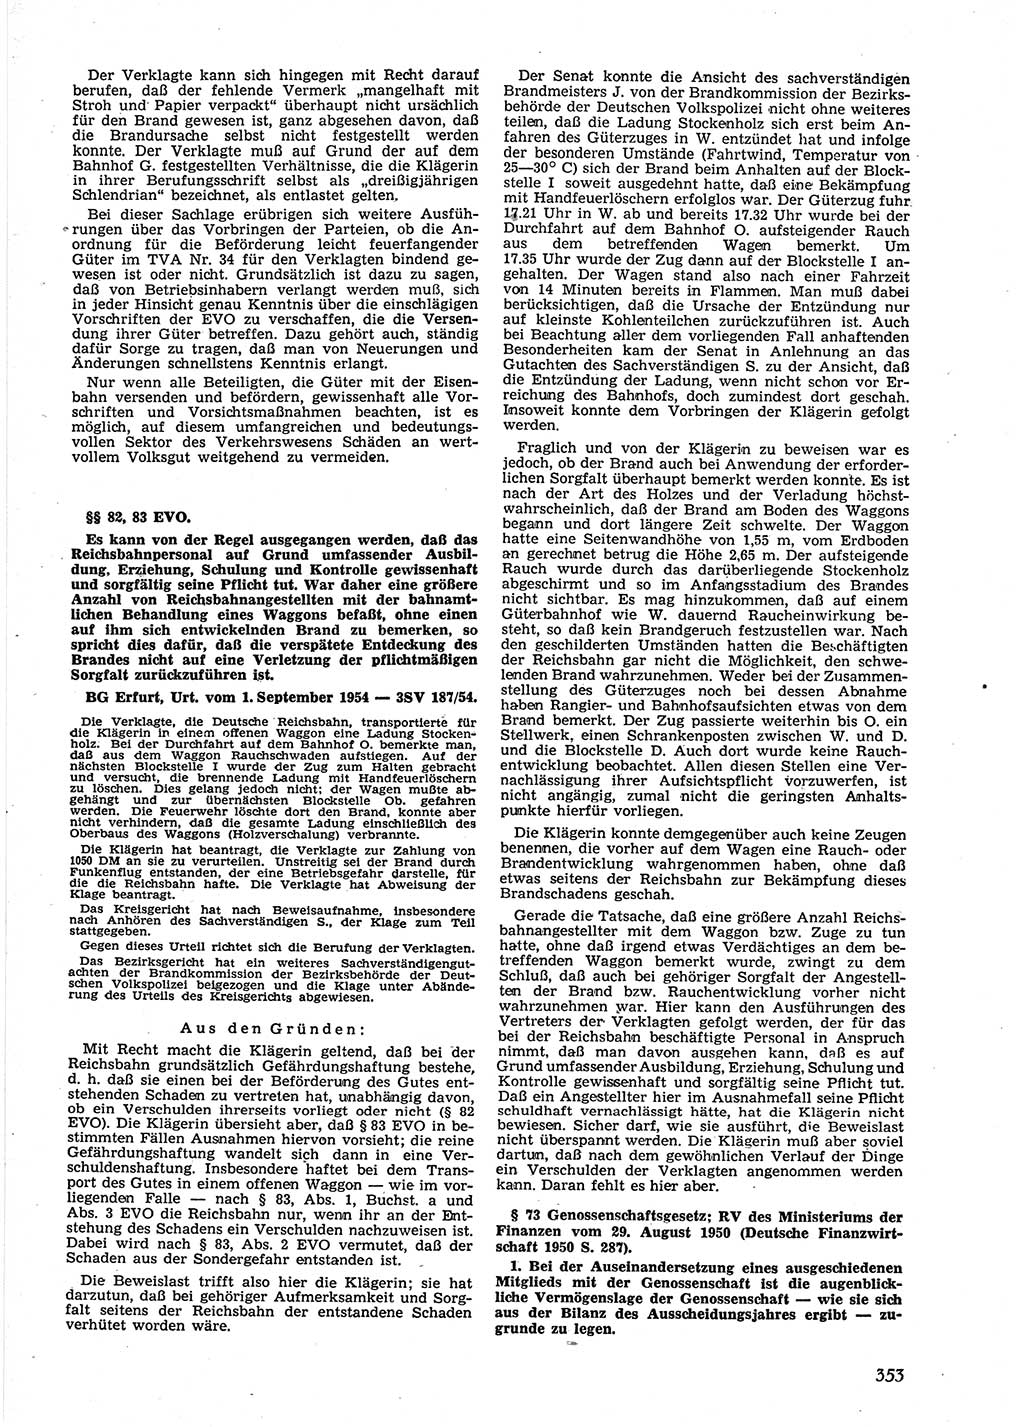 Neue Justiz (NJ), Zeitschrift für Recht und Rechtswissenschaft [Deutsche Demokratische Republik (DDR)], 9. Jahrgang 1955, Seite 353 (NJ DDR 1955, S. 353)